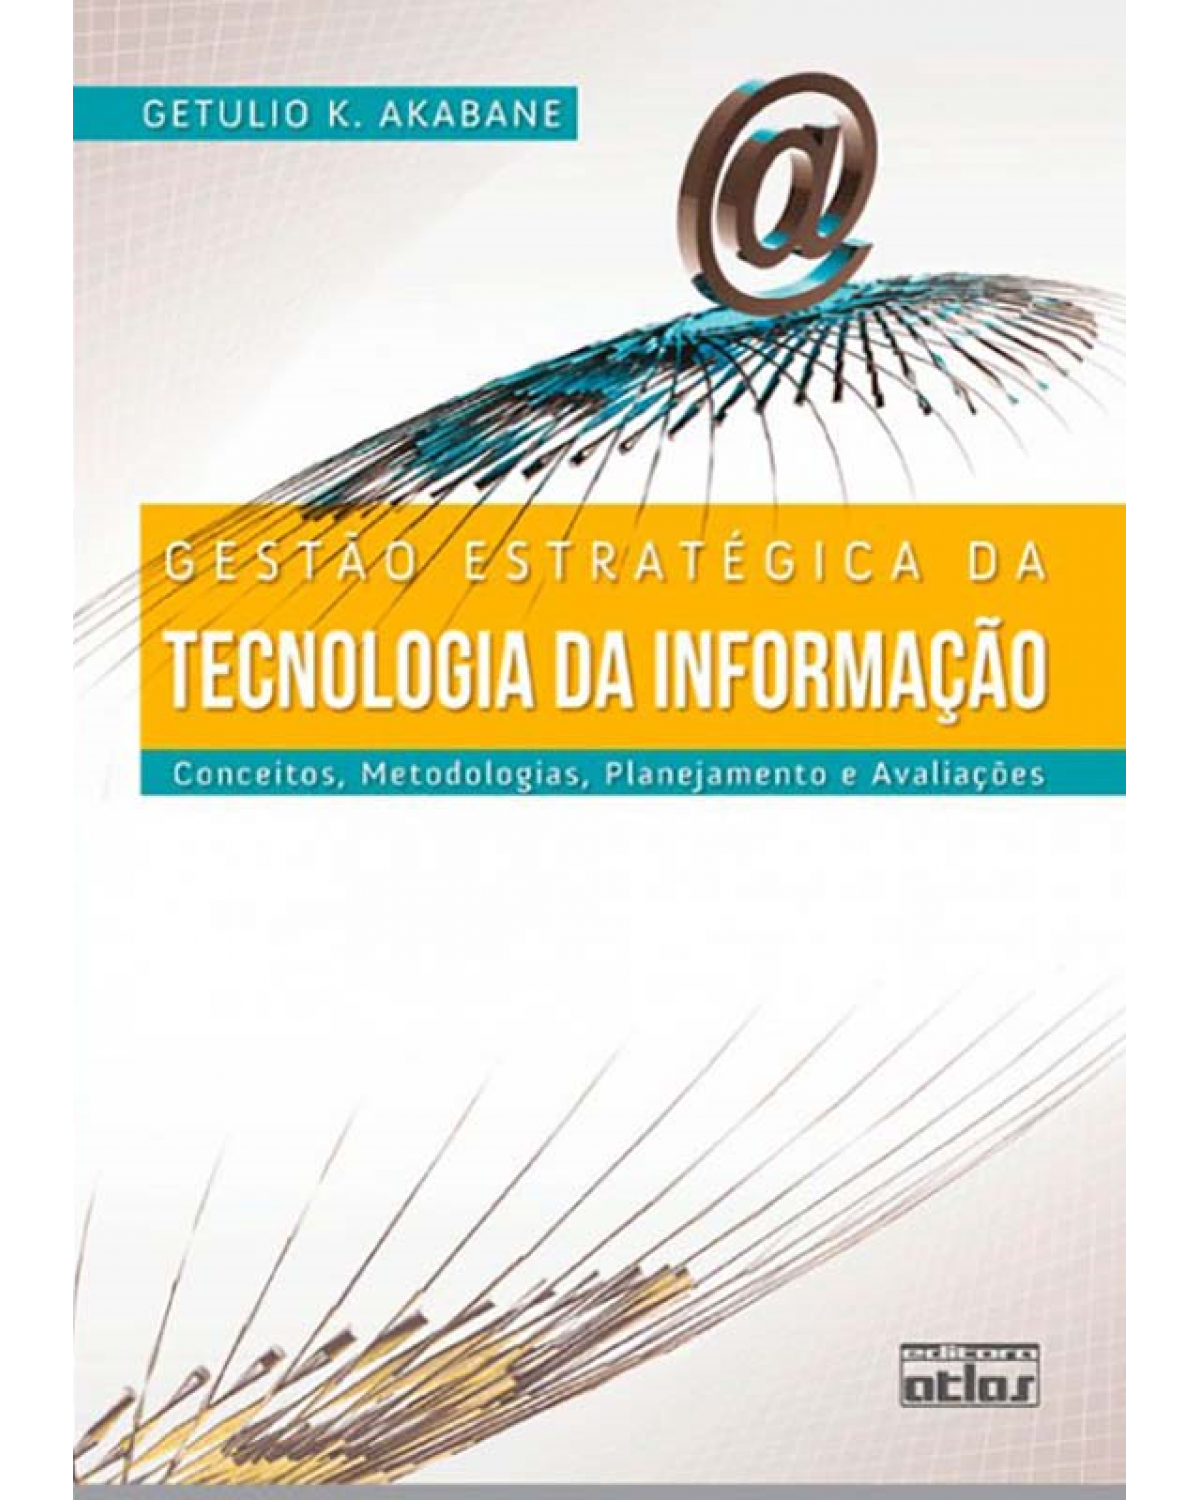 Gestão estratégica da tecnologia da informação - Conceitos, metodologias, planejamento e avaliações - 1ª Edição | 2012